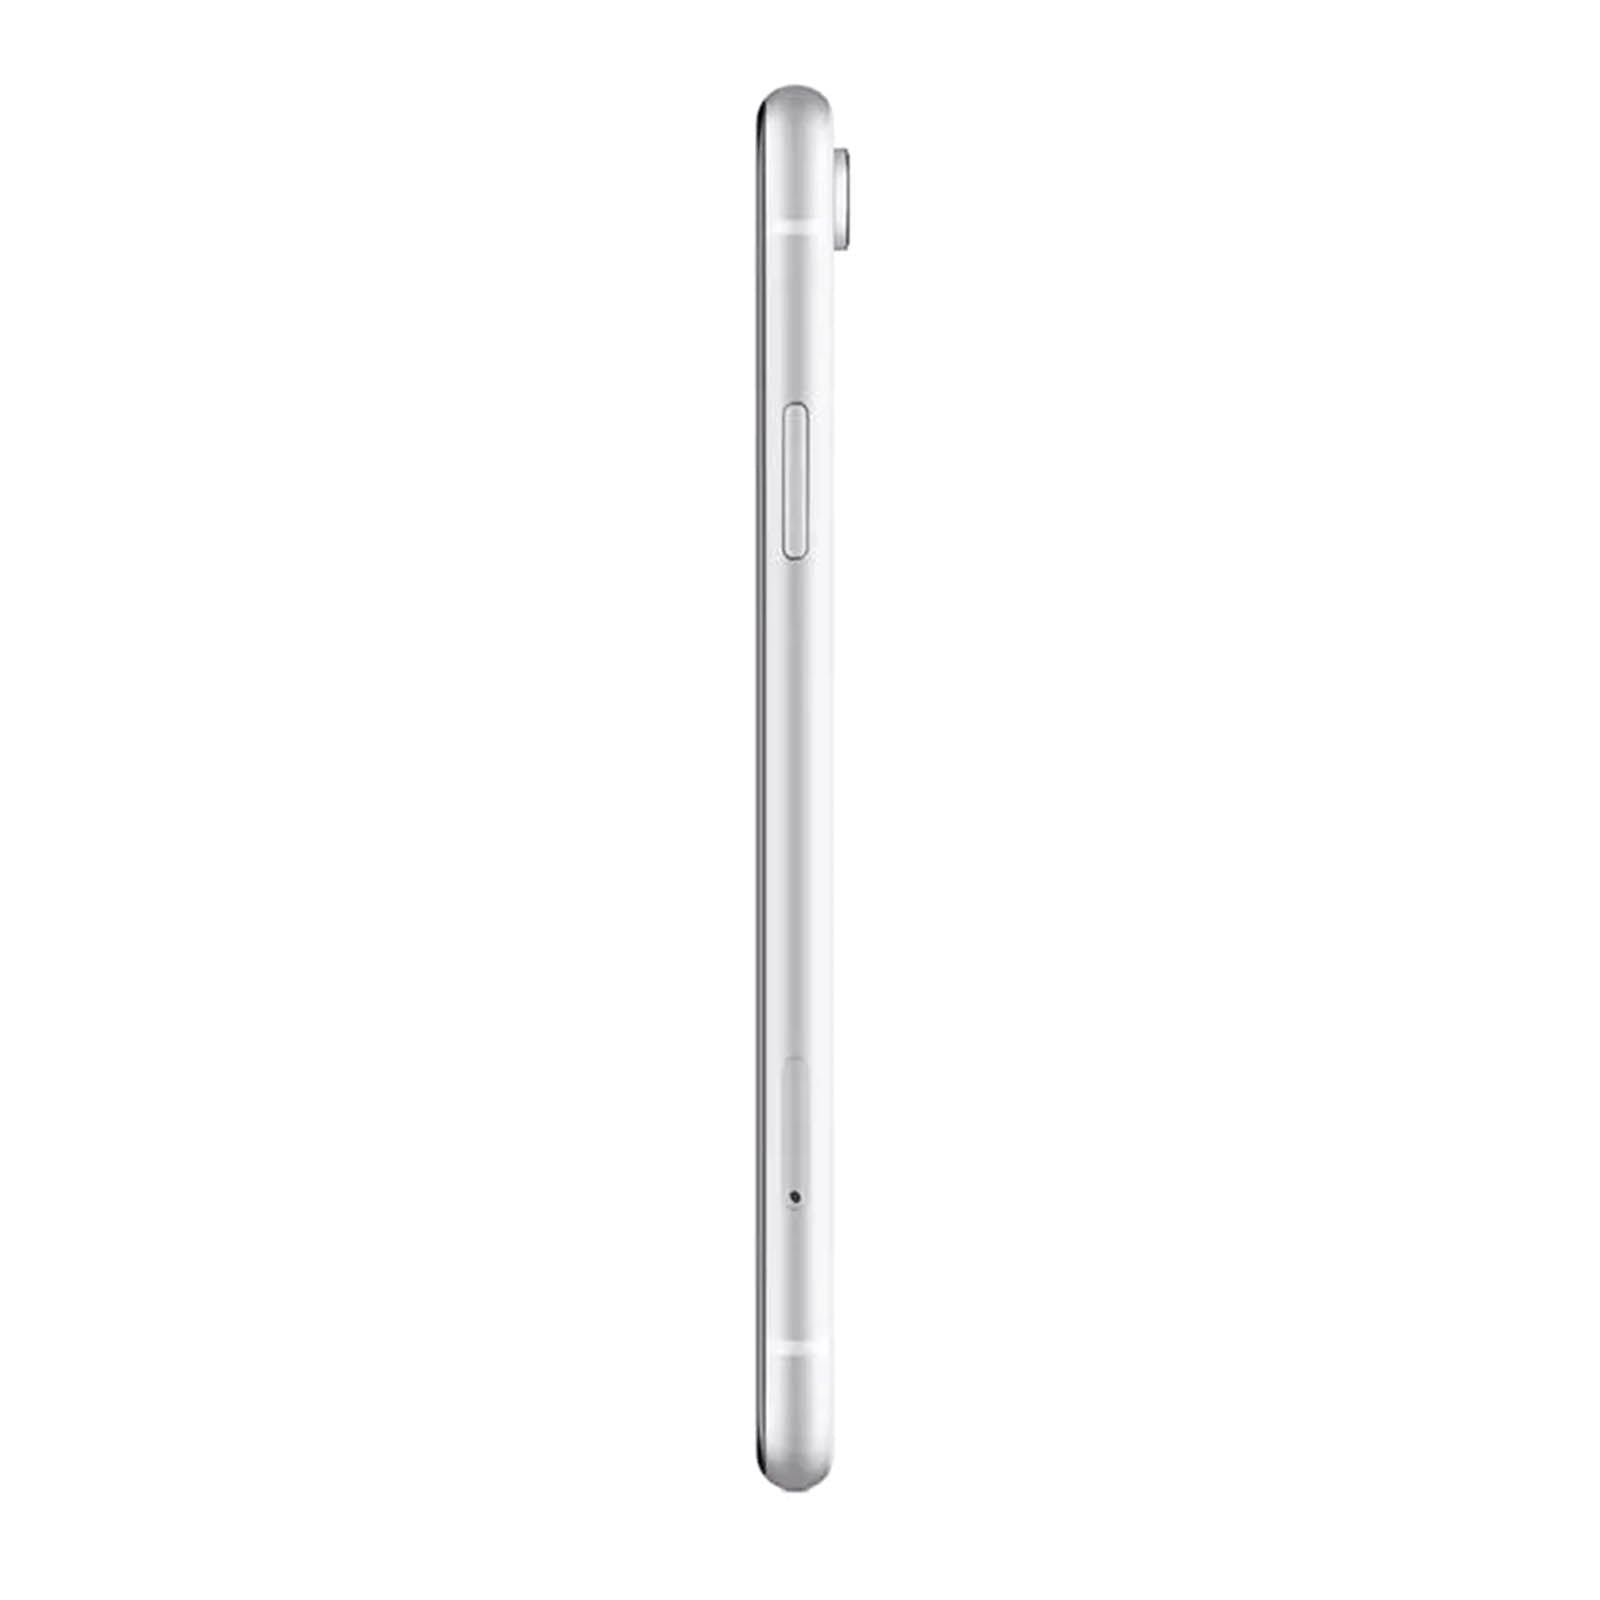 Apple iPhone XR 128GB - White – Loop Mobile - AU